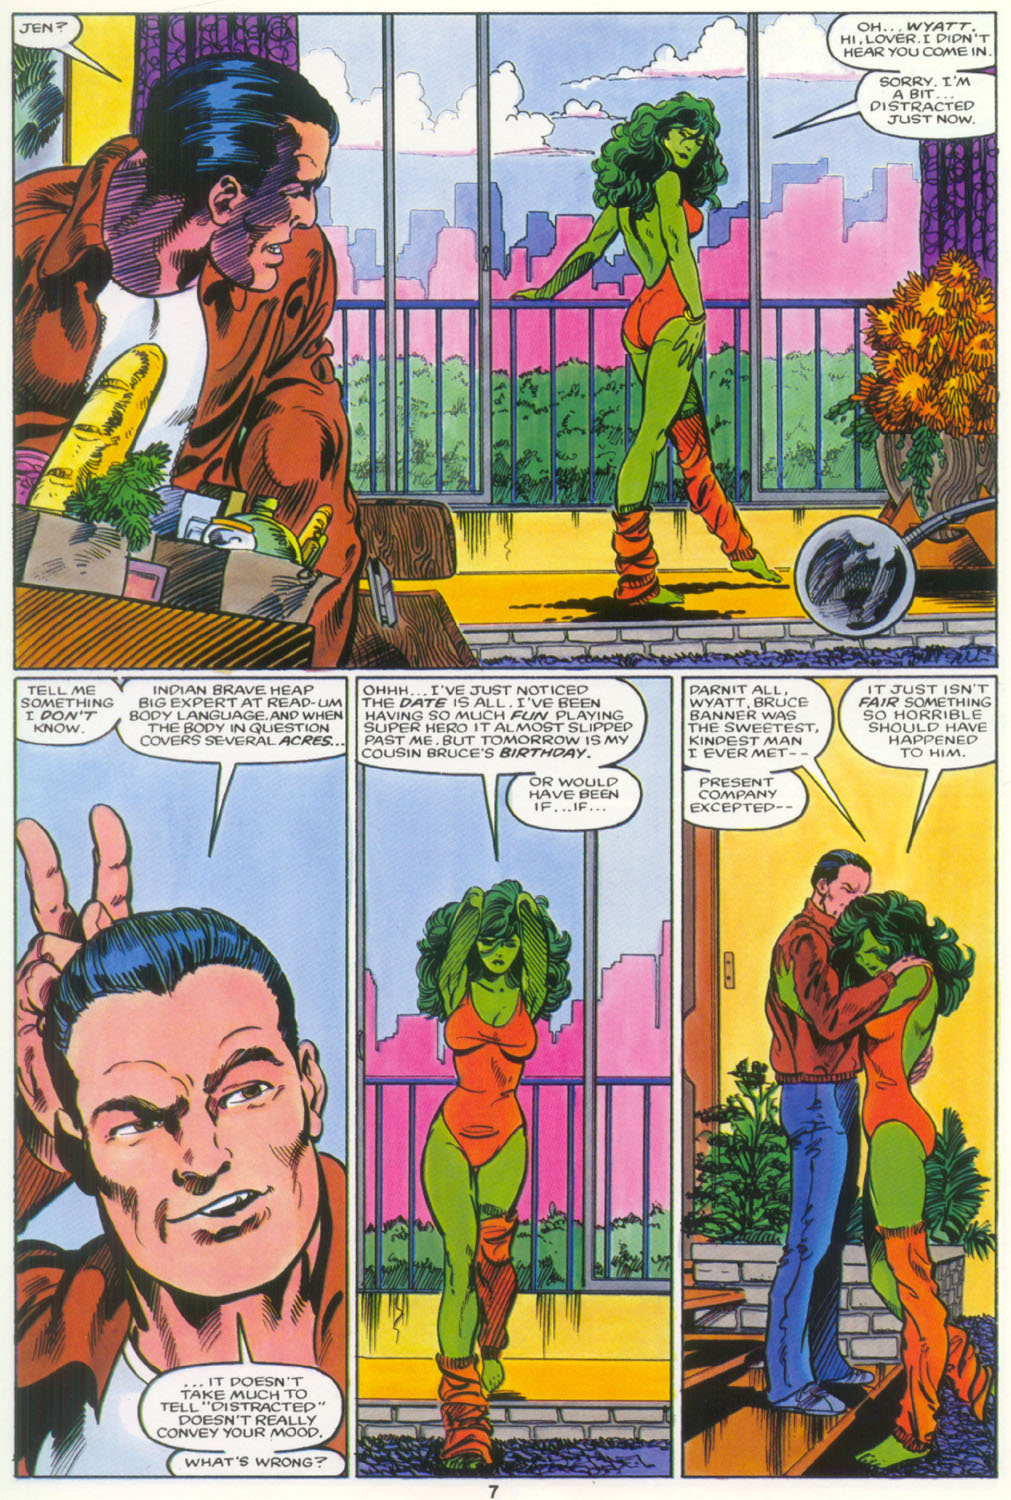 Read online Marvel Graphic Novel comic -  Issue #18 - The Sensational She-Hulk - 8